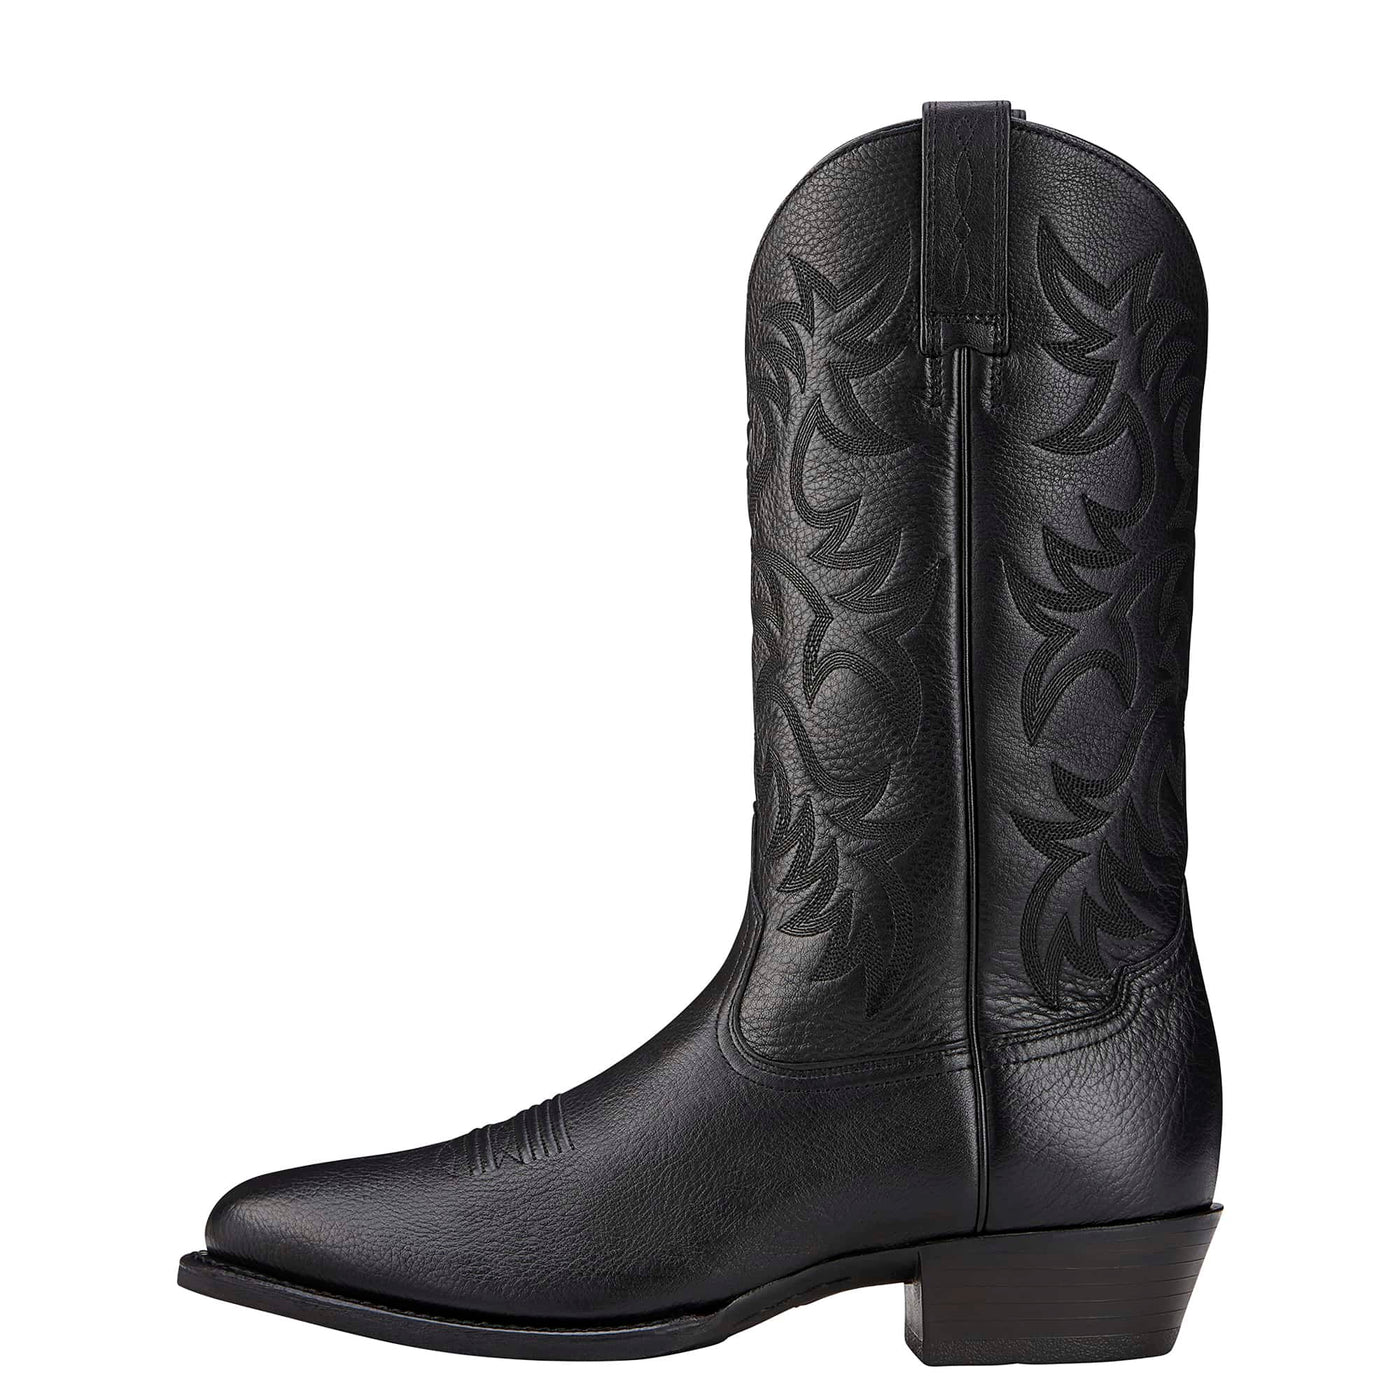 Ariat Boots | Men's Heritage Western R Toe Black Deertan